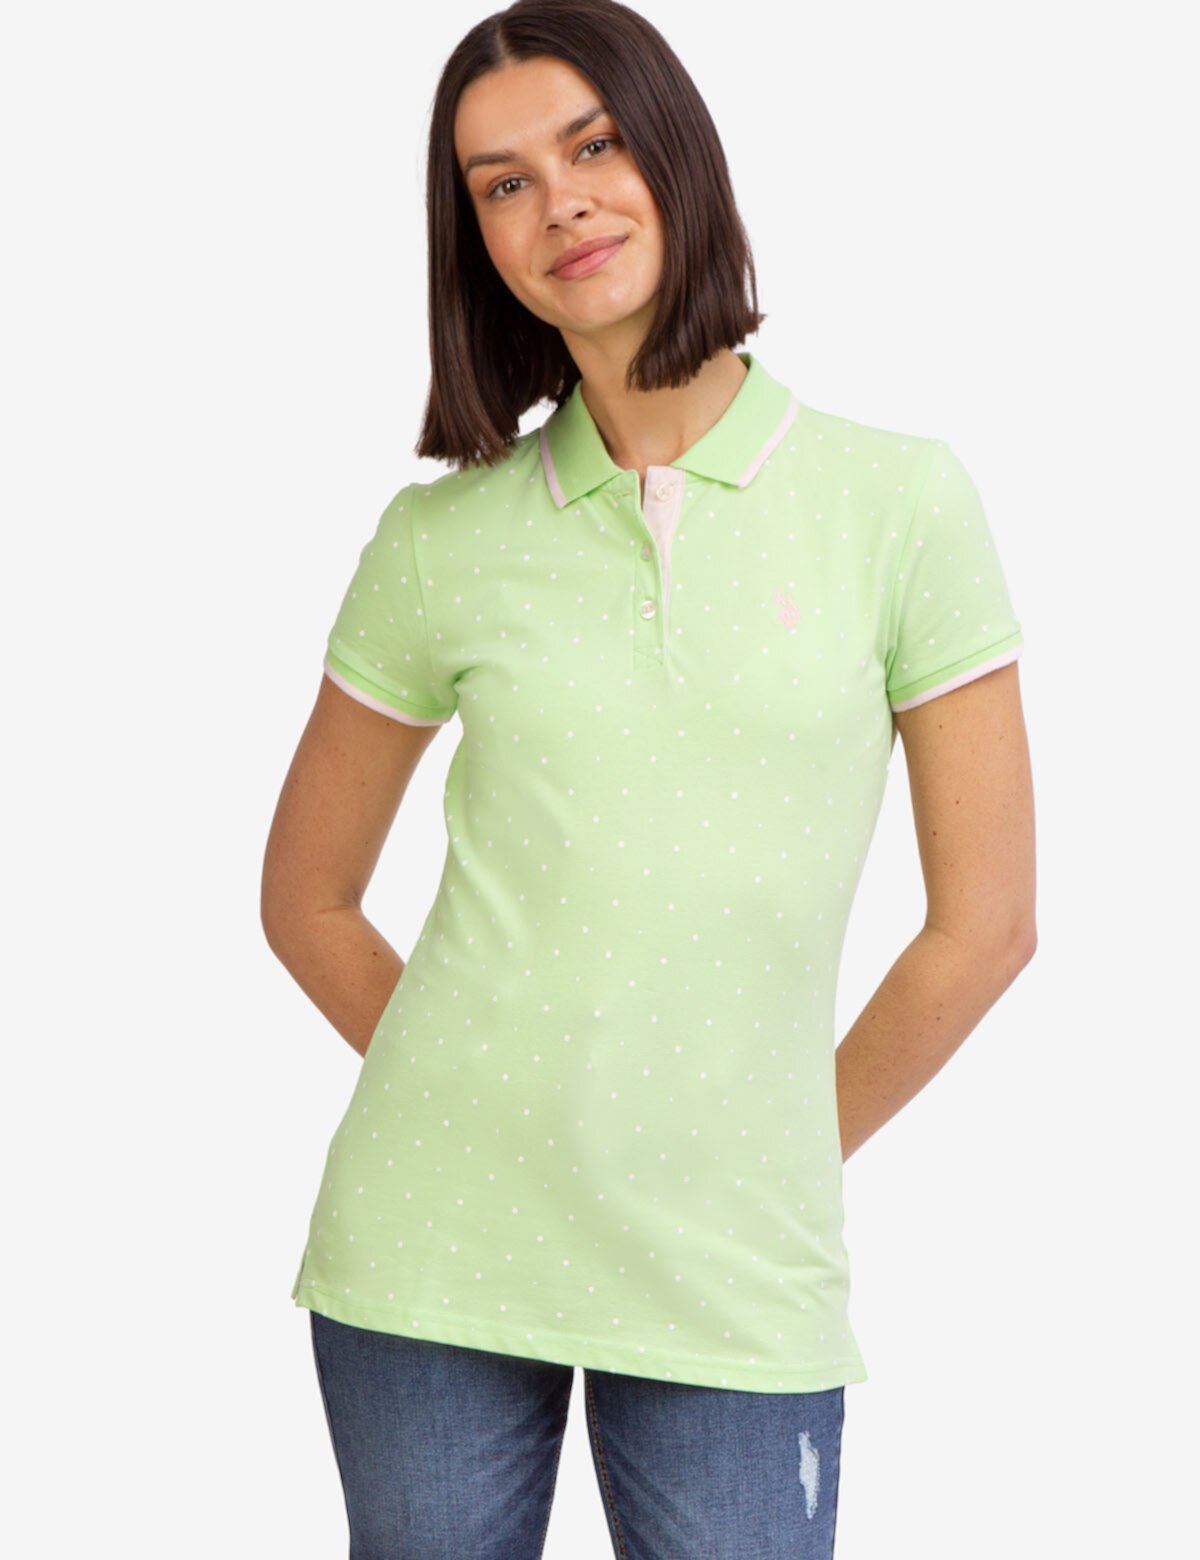 Женская рубашка-поло в горошек U.S. POLO ASSN. U.S. POLO ASSN.